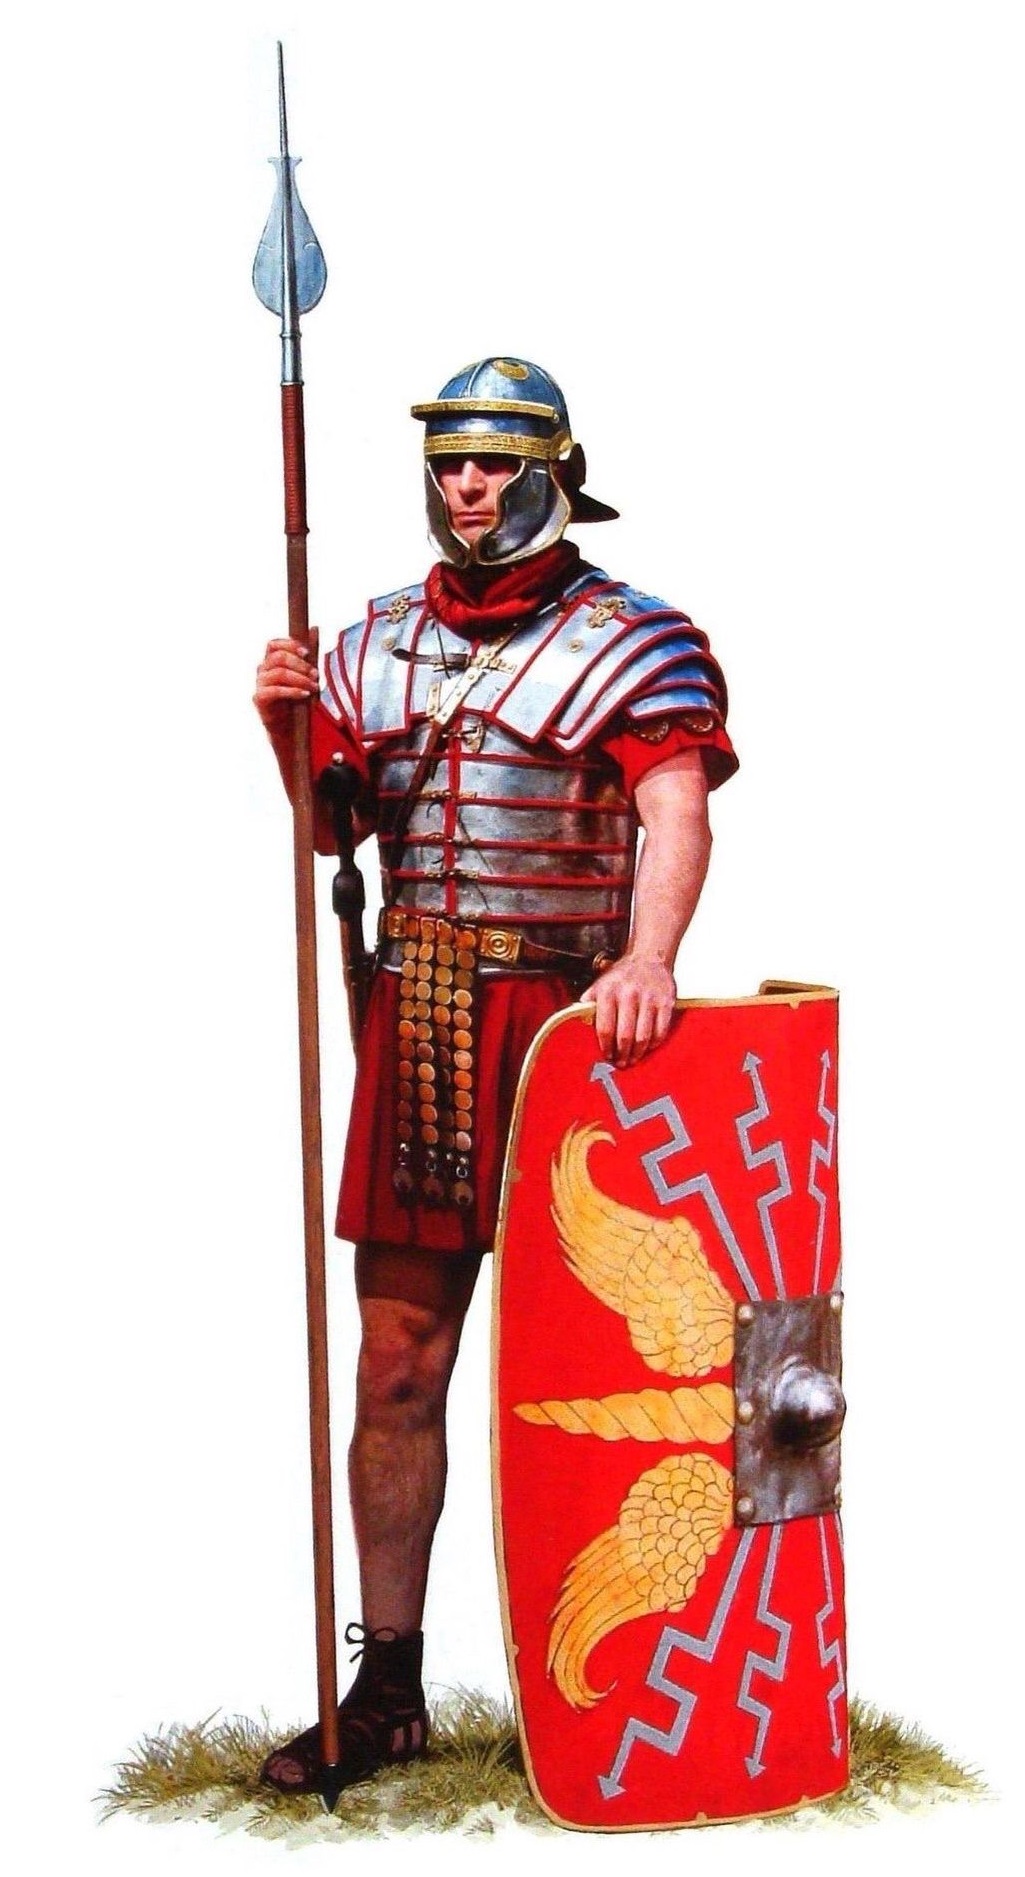 上图：第二世纪早期的罗马士兵。古罗马最初采用征兵制，士兵需要自行购置武器装备。主前1世纪，盖乌斯·马略进行了军事改革，以募兵制代替征兵制。无财产者也可以应募入伍。罗马公民加入罗马军团（Roman legion）后，必须服役16年。退伍后可在被征服地区分得土地、或一次性退休金。退伍士兵有时能集体参与新的殖民都市建设，在工程期间领取工资、完成后拥有私人地产。此类殖民都市（如腓立比）经常成为大量退役士兵及其妻小的聚居地，在一定程度上促进了罗马士兵的世袭化。辅助军团的士兵通常由未获得罗马公民权的行省住民组成，退役后将得到罗马公民权。